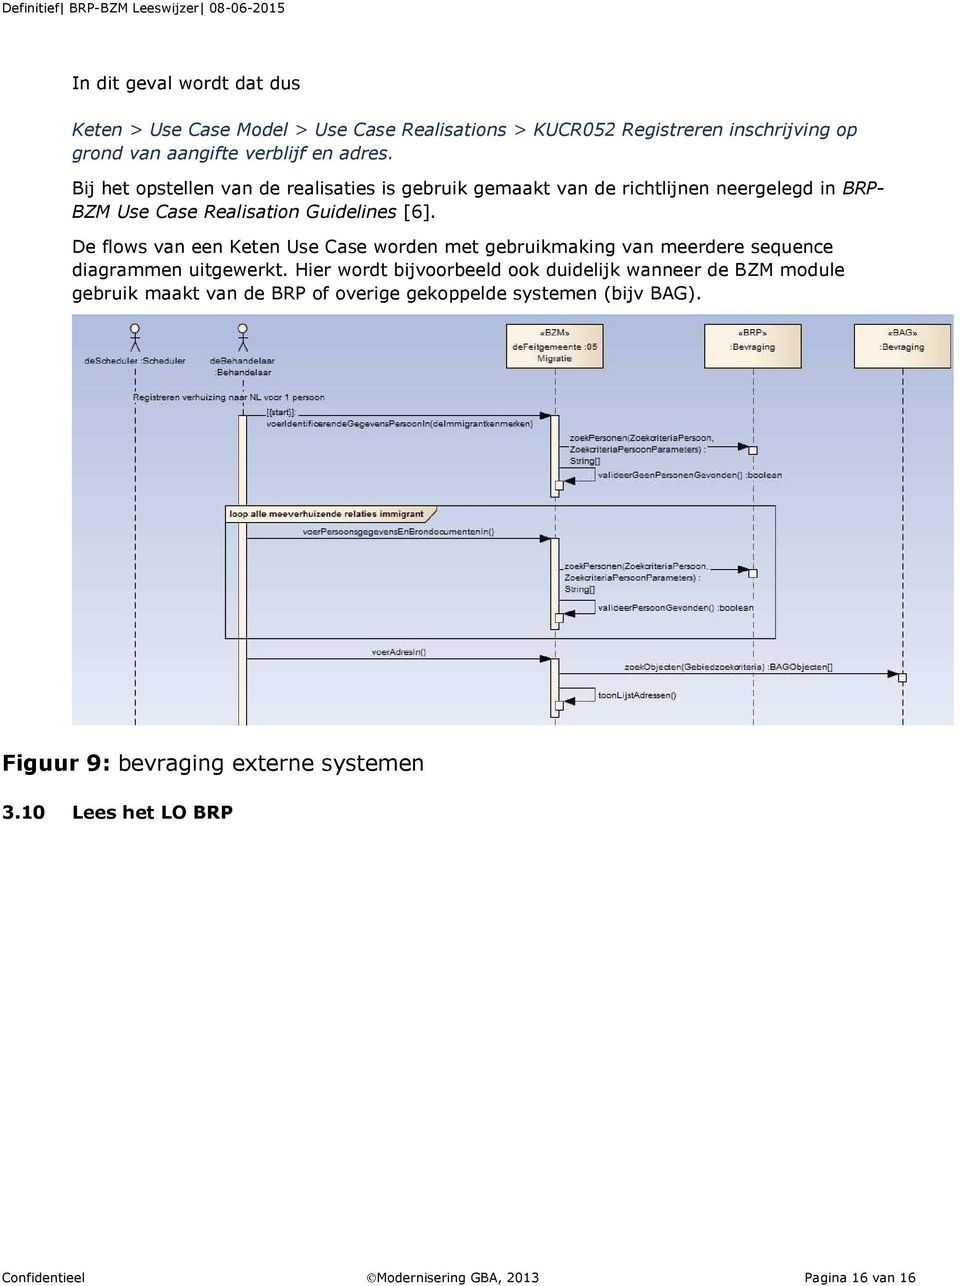 De flows van een Keten Use Case worden met gebruikmaking van meerdere sequence diagrammen uitgewerkt.